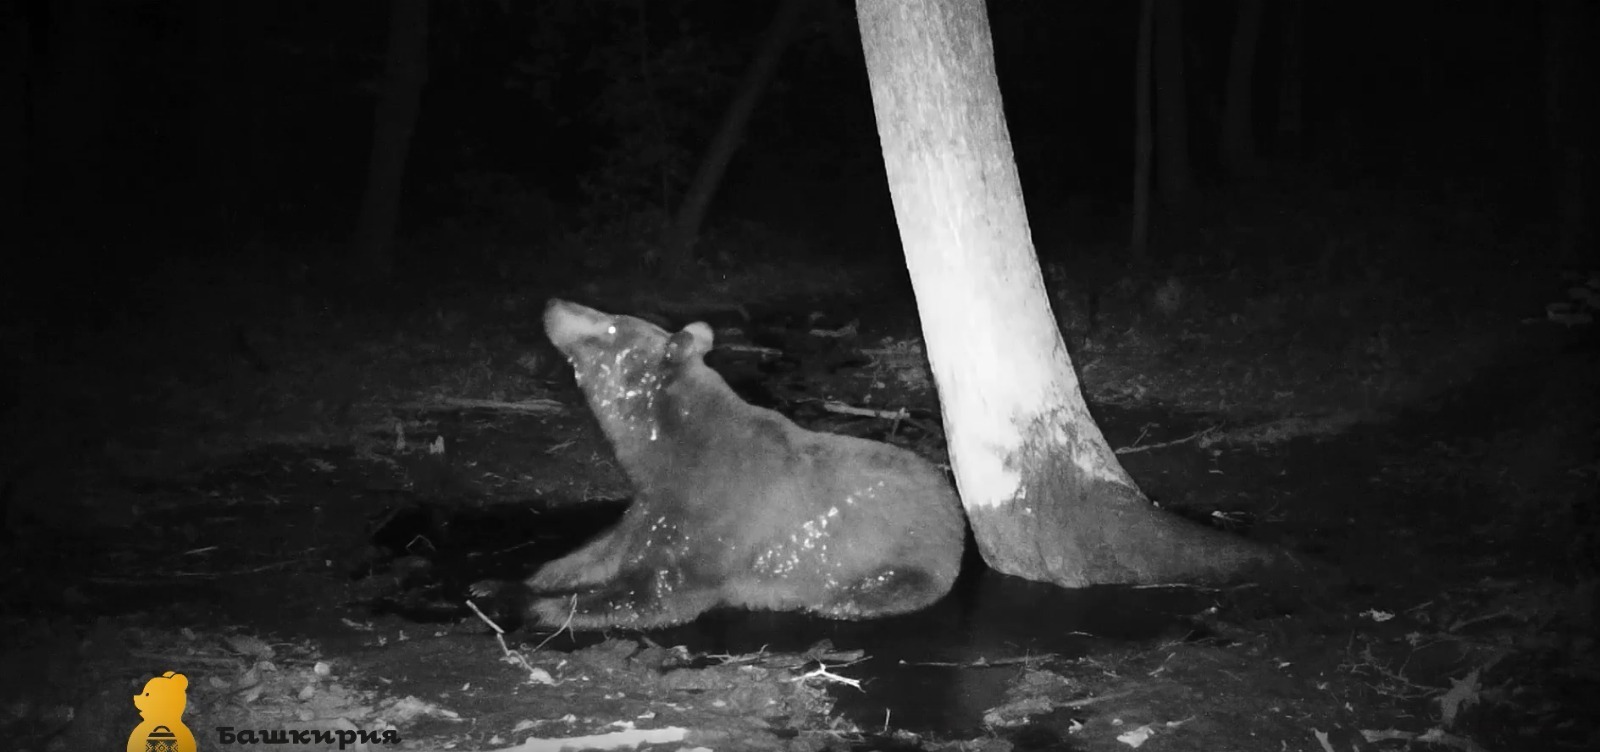 В национальном парке "Башкирия" камера зафиксировала, как медведи не поделили лужу